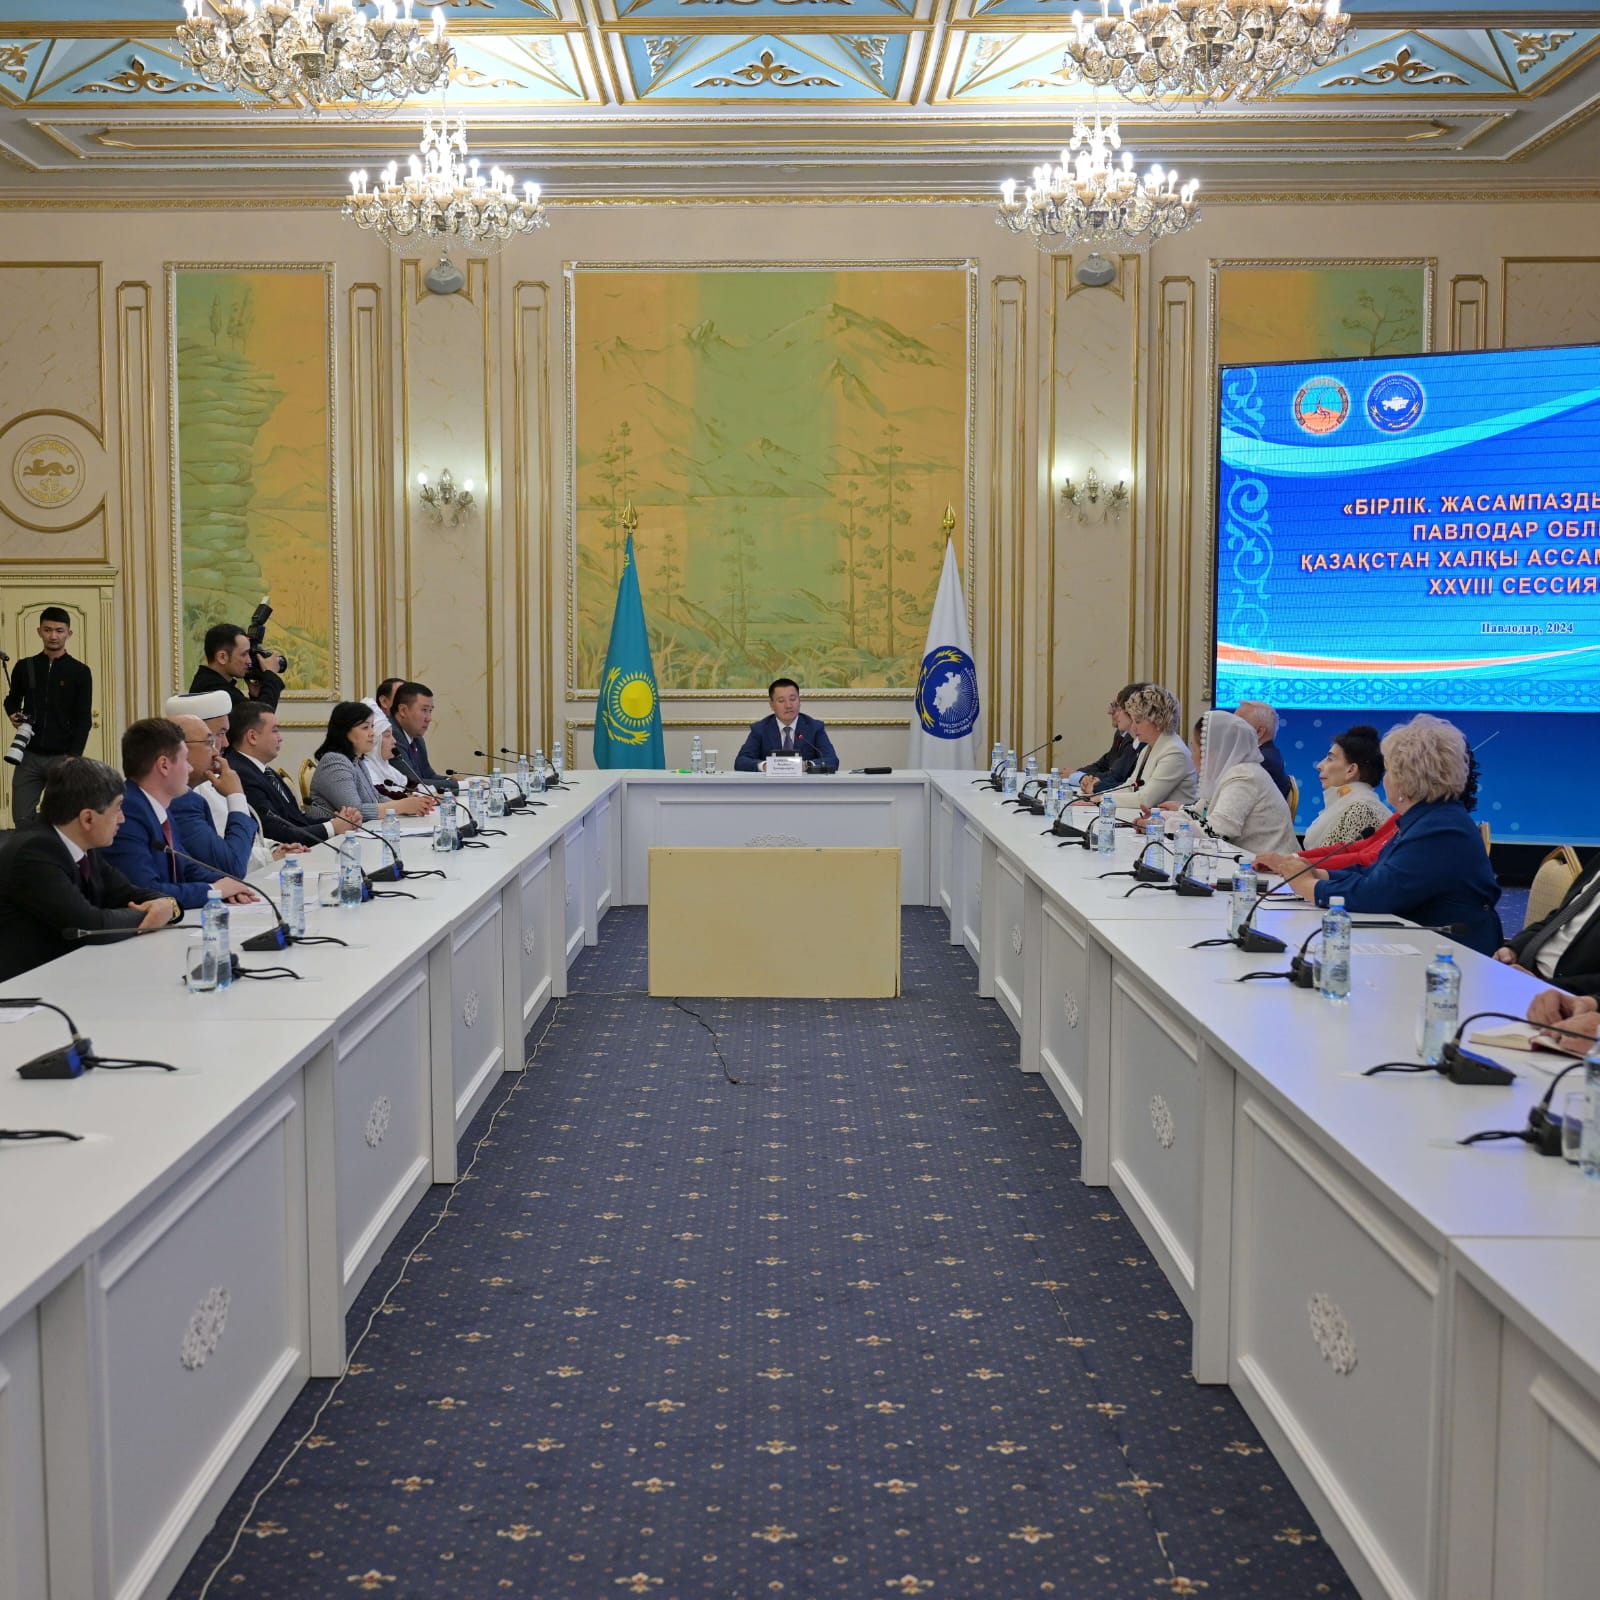 В Доме Дружбы состоялось заседание областного филиала Ассамблеи народа Казахстана с участием этнообъединений региона